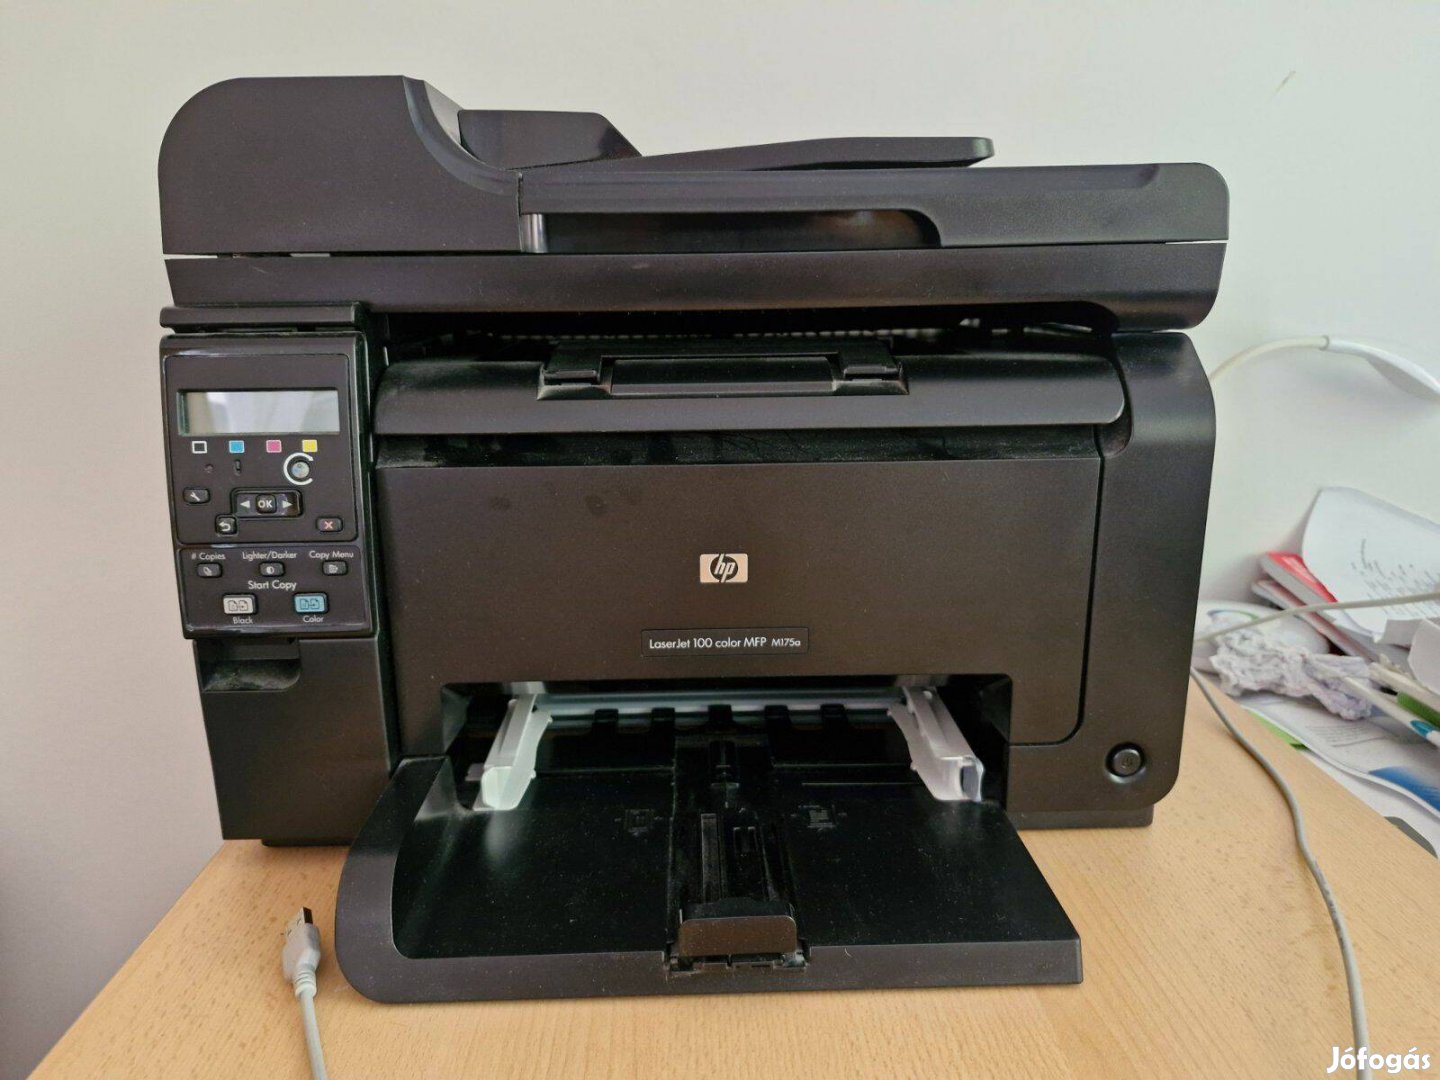 Laser Jet 100 color printer